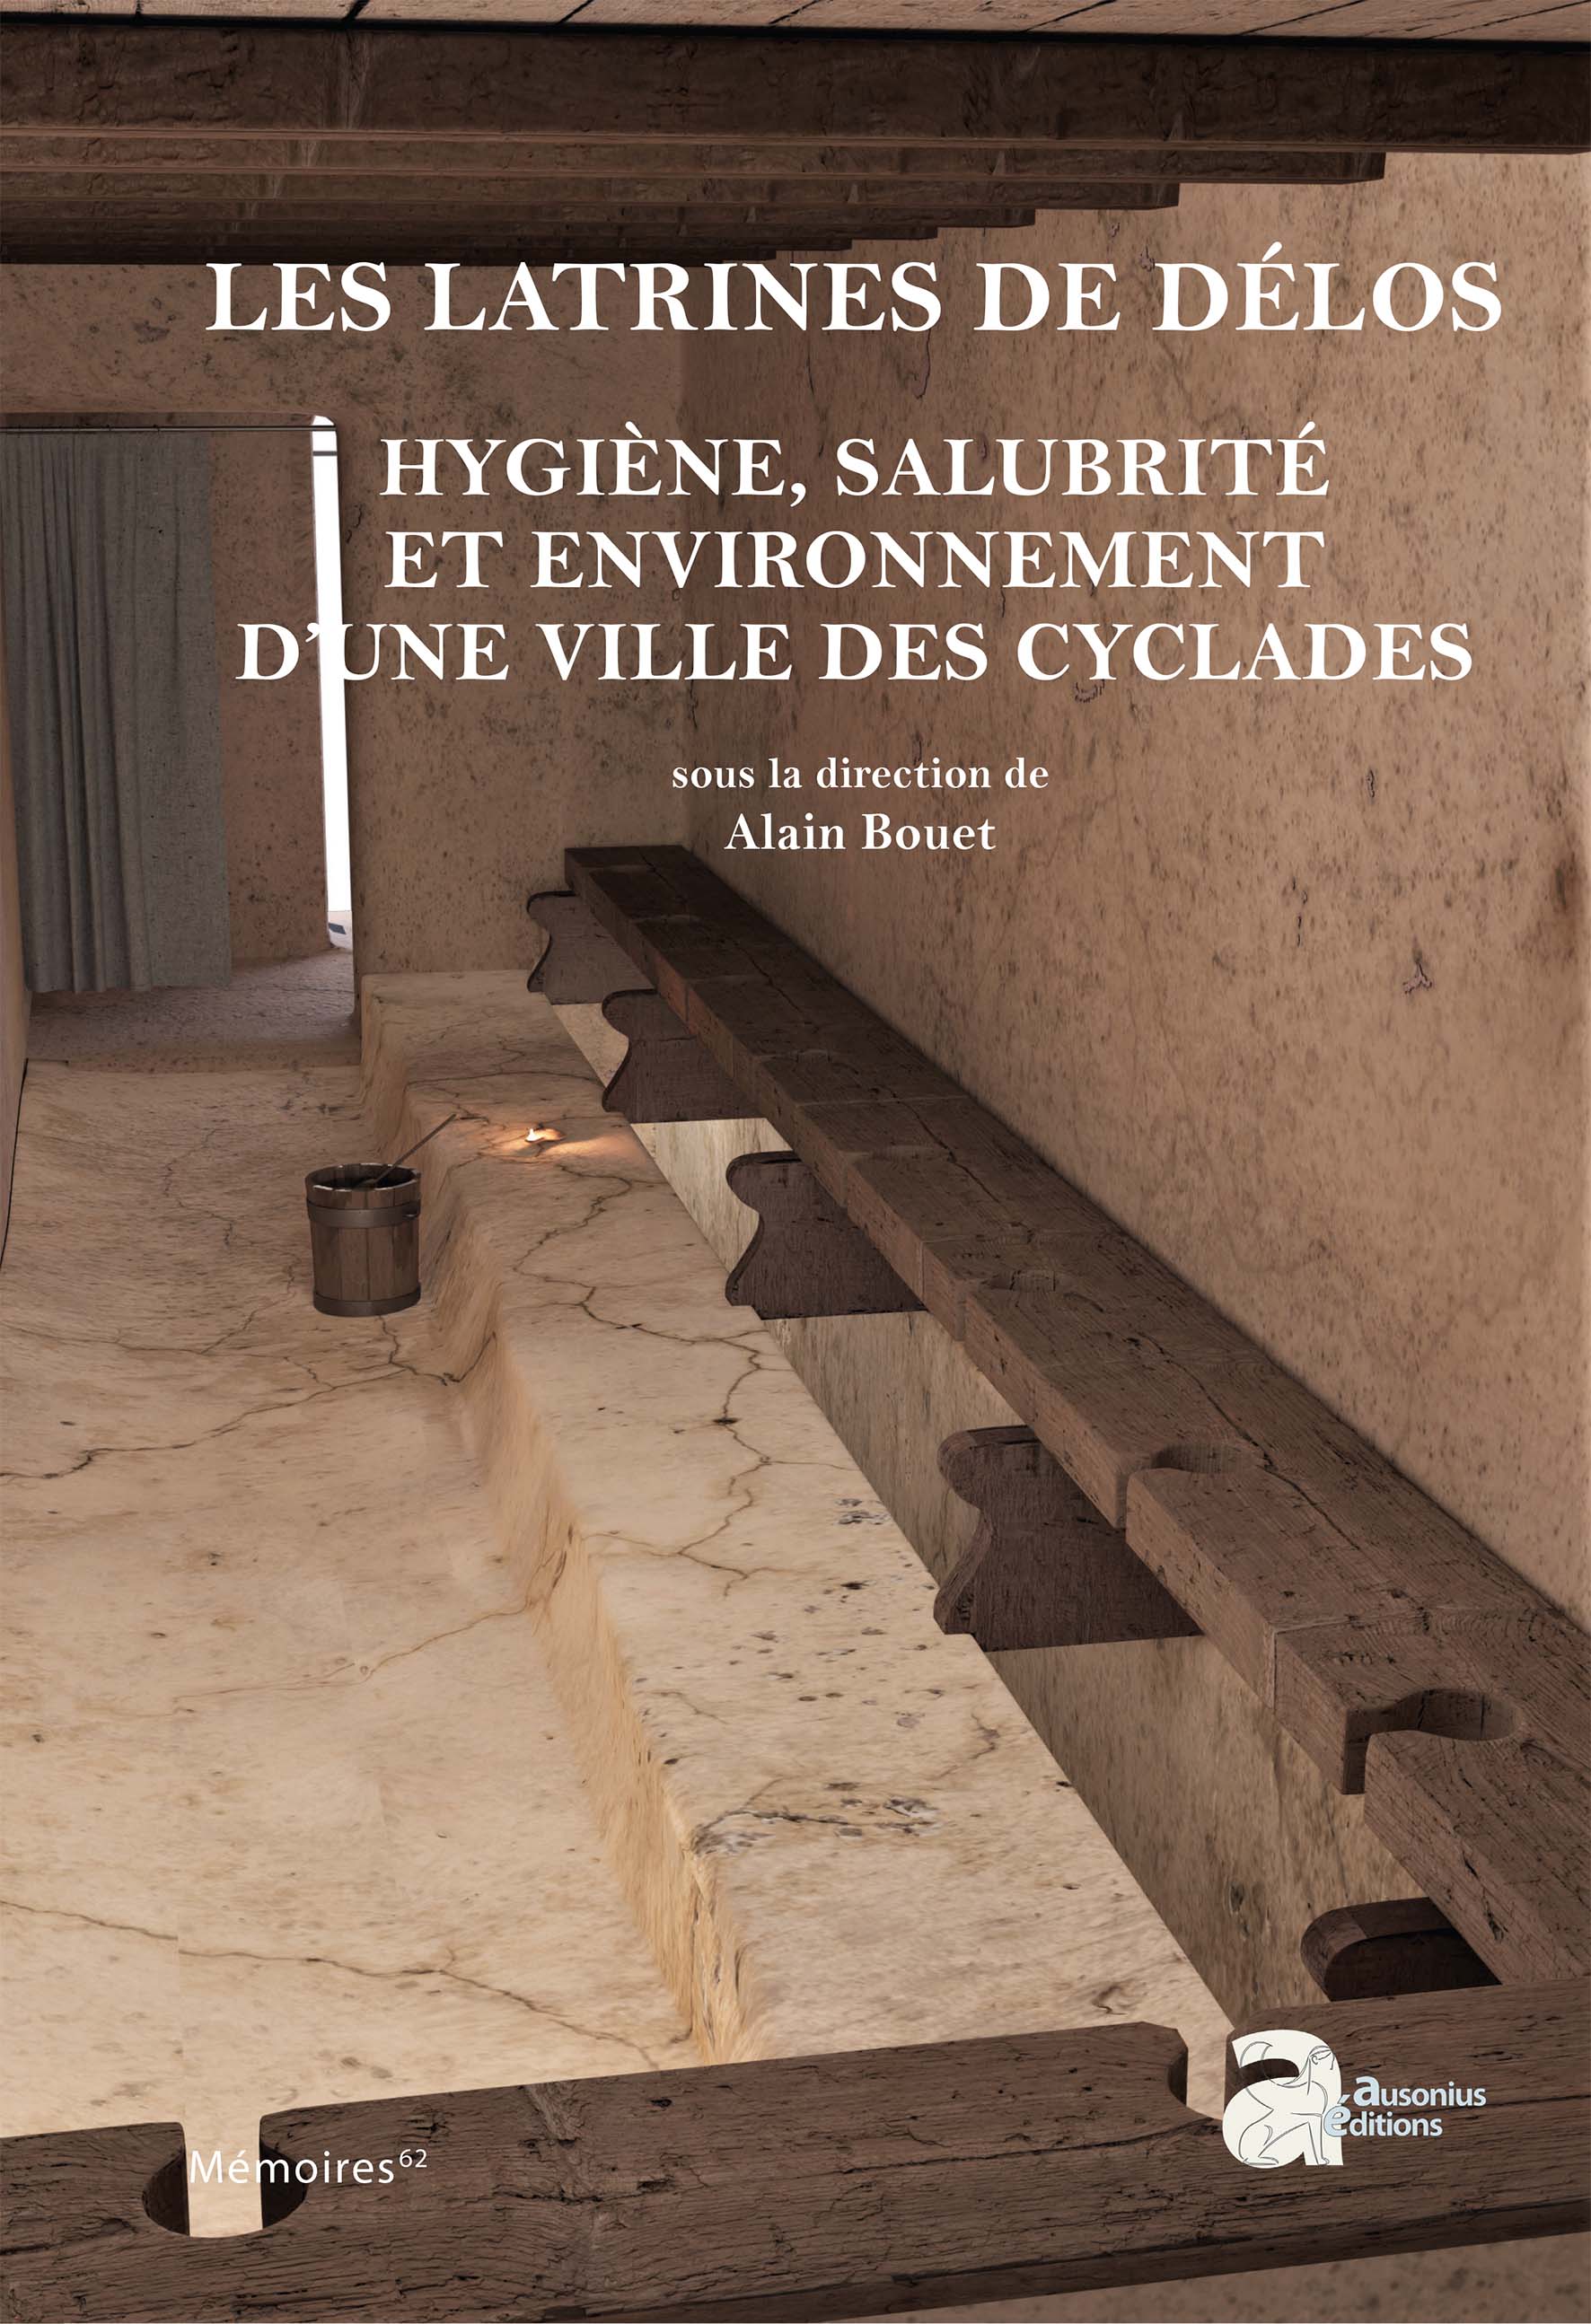 Les latrines de Délos. Hygiène, salubrité et environnement d'une ville des Cyclades, (Mémoire Ausonius 62), 2023, 740 p.